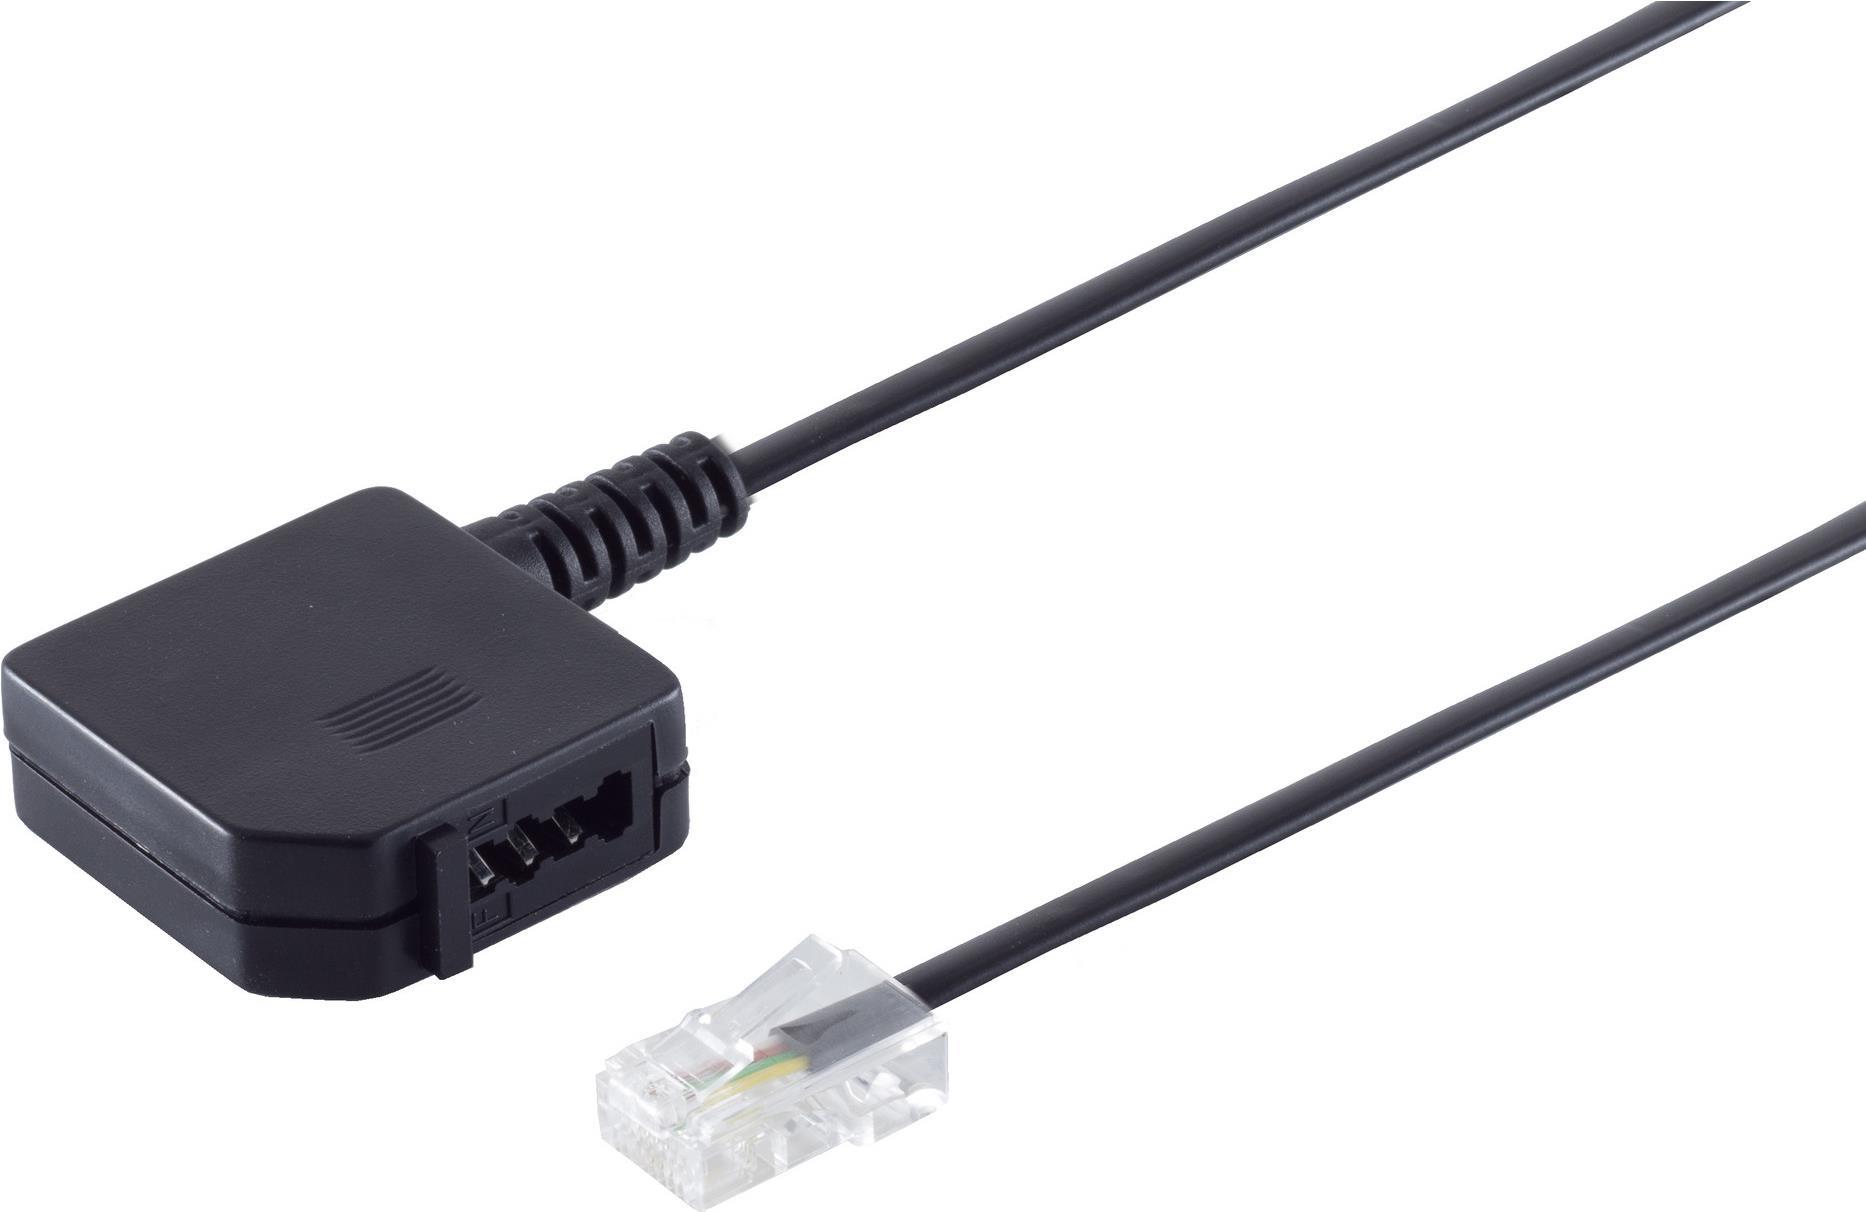 S/CONN maximum connectivity Telefon Adapter-Western-Stecker 8/4 auf TAE U-Kupplung, 0,2m (71041-1)